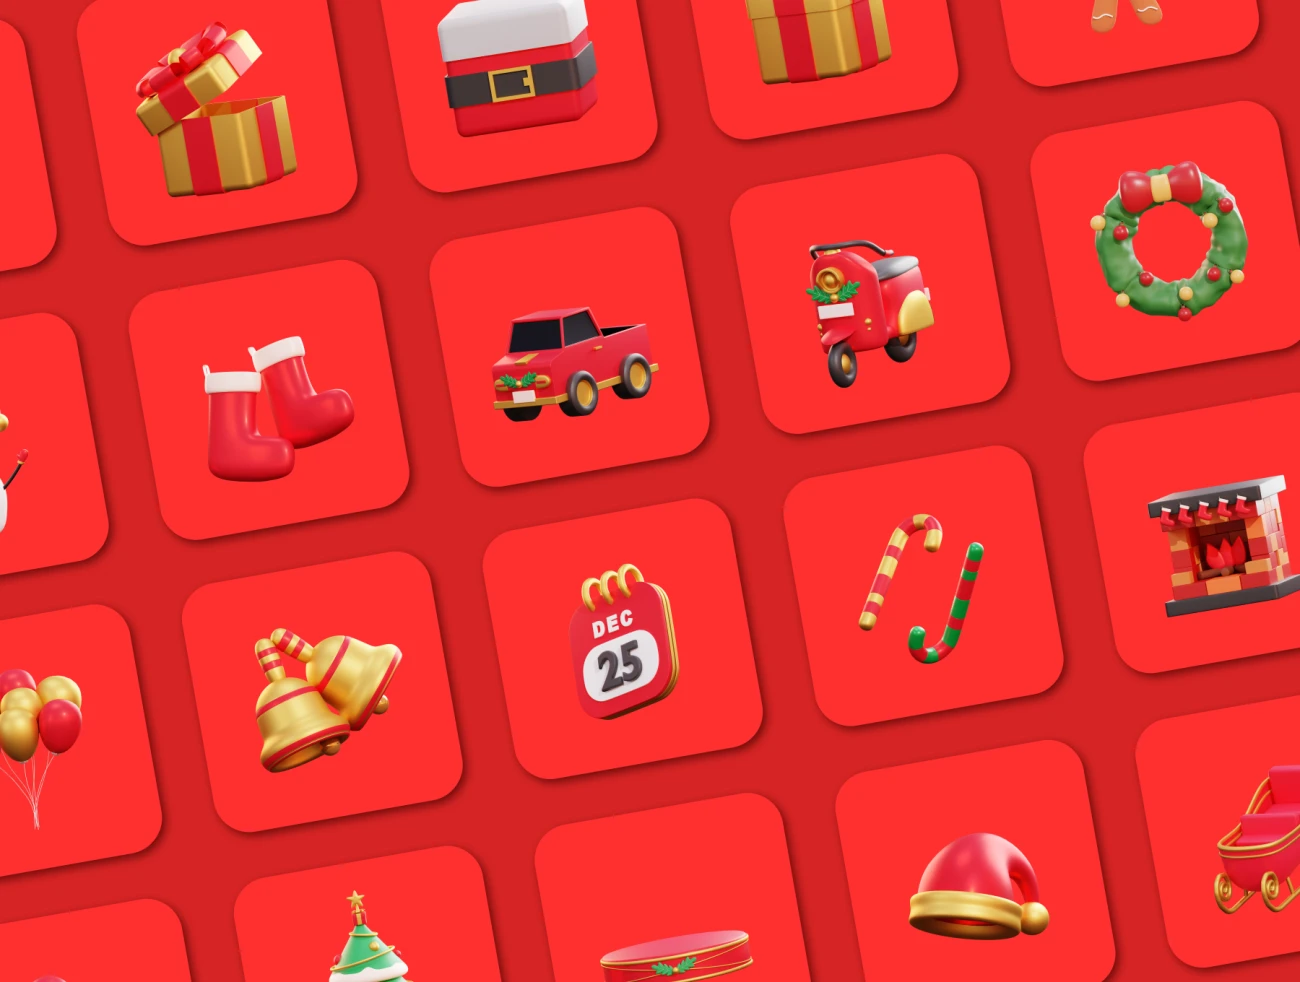 20款3D矢量圣诞节插画图标素材下载 Christmas – 3D Icon Premium Pack .blender .psd .figma插图11